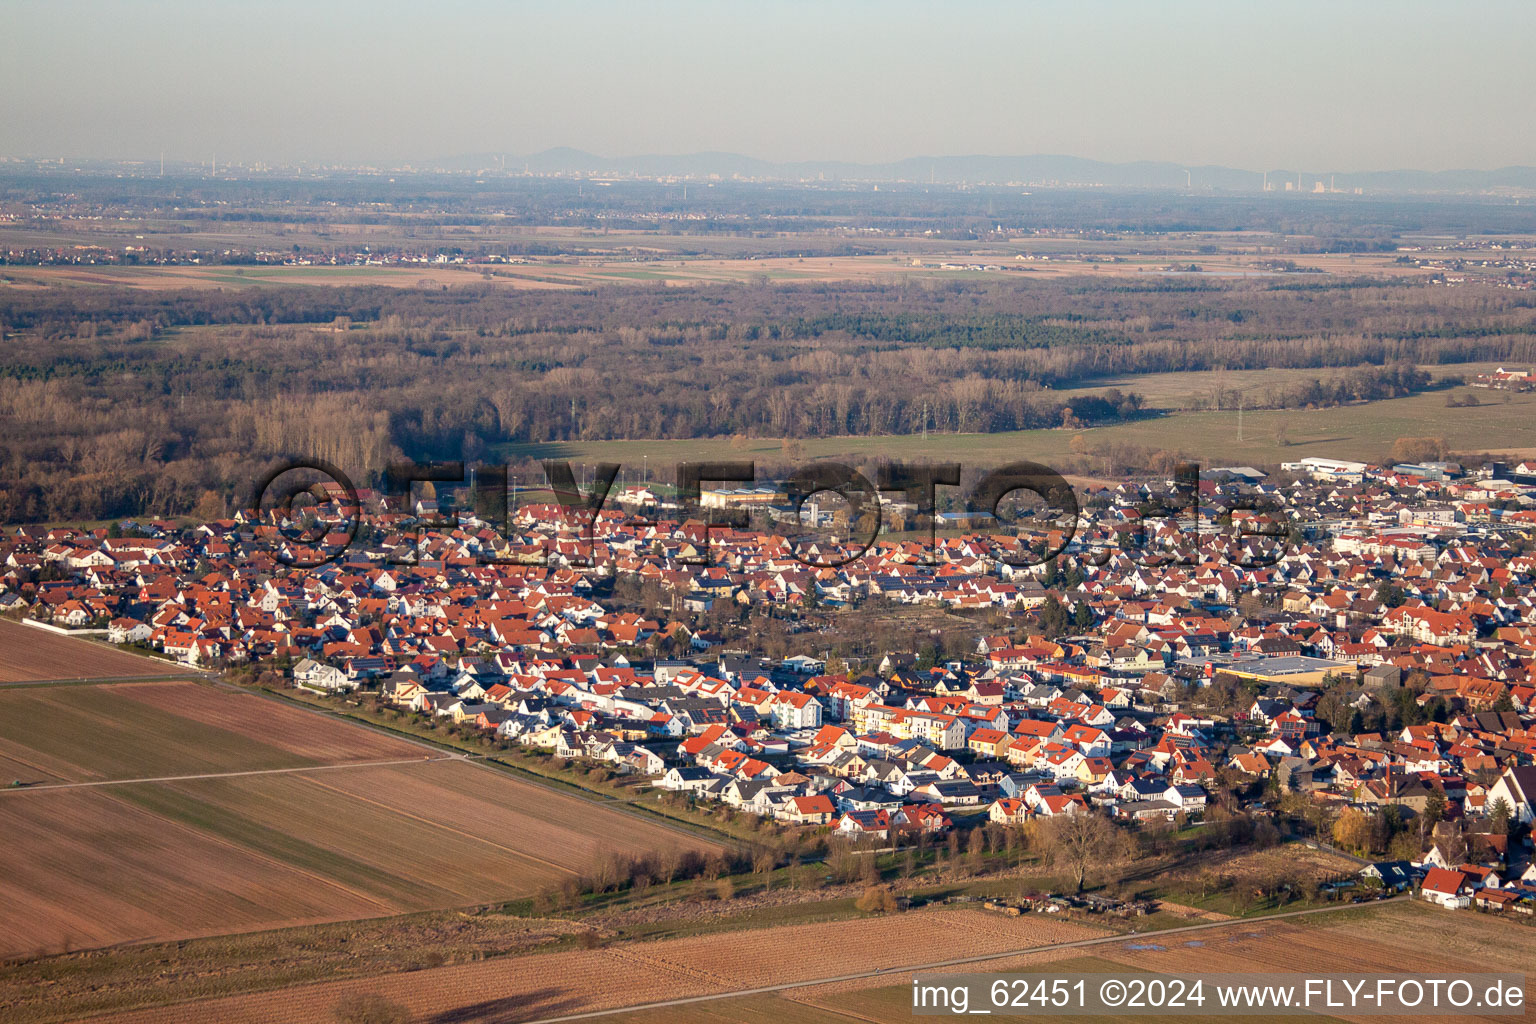 Offenbach an der Queich dans le département Rhénanie-Palatinat, Allemagne vue du ciel